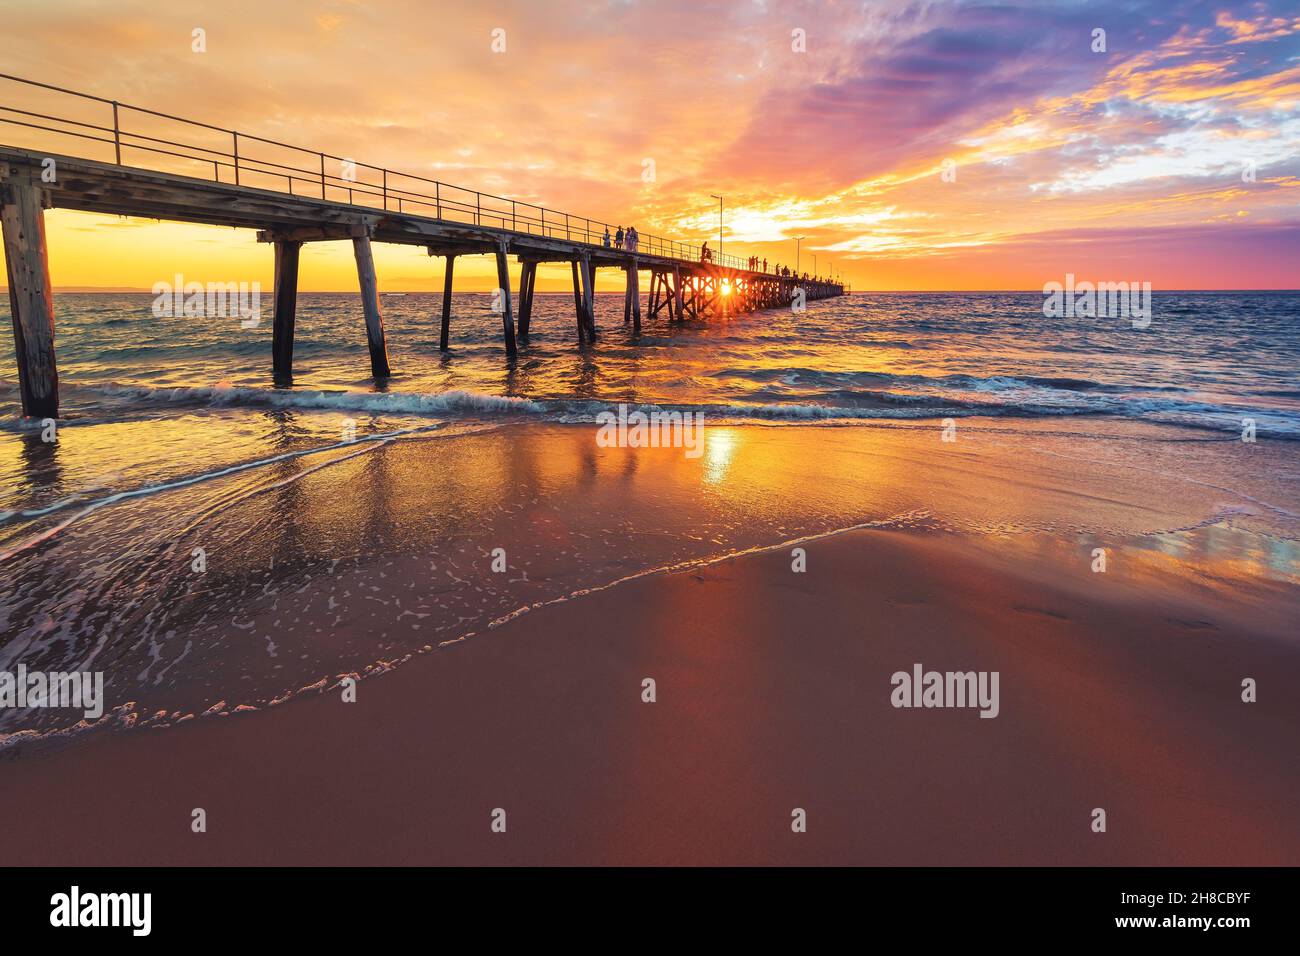 Port Noarlunda Beach Pier mit Menschen, die bei Sonnenuntergang entlang gehen, South Australia Stockfoto